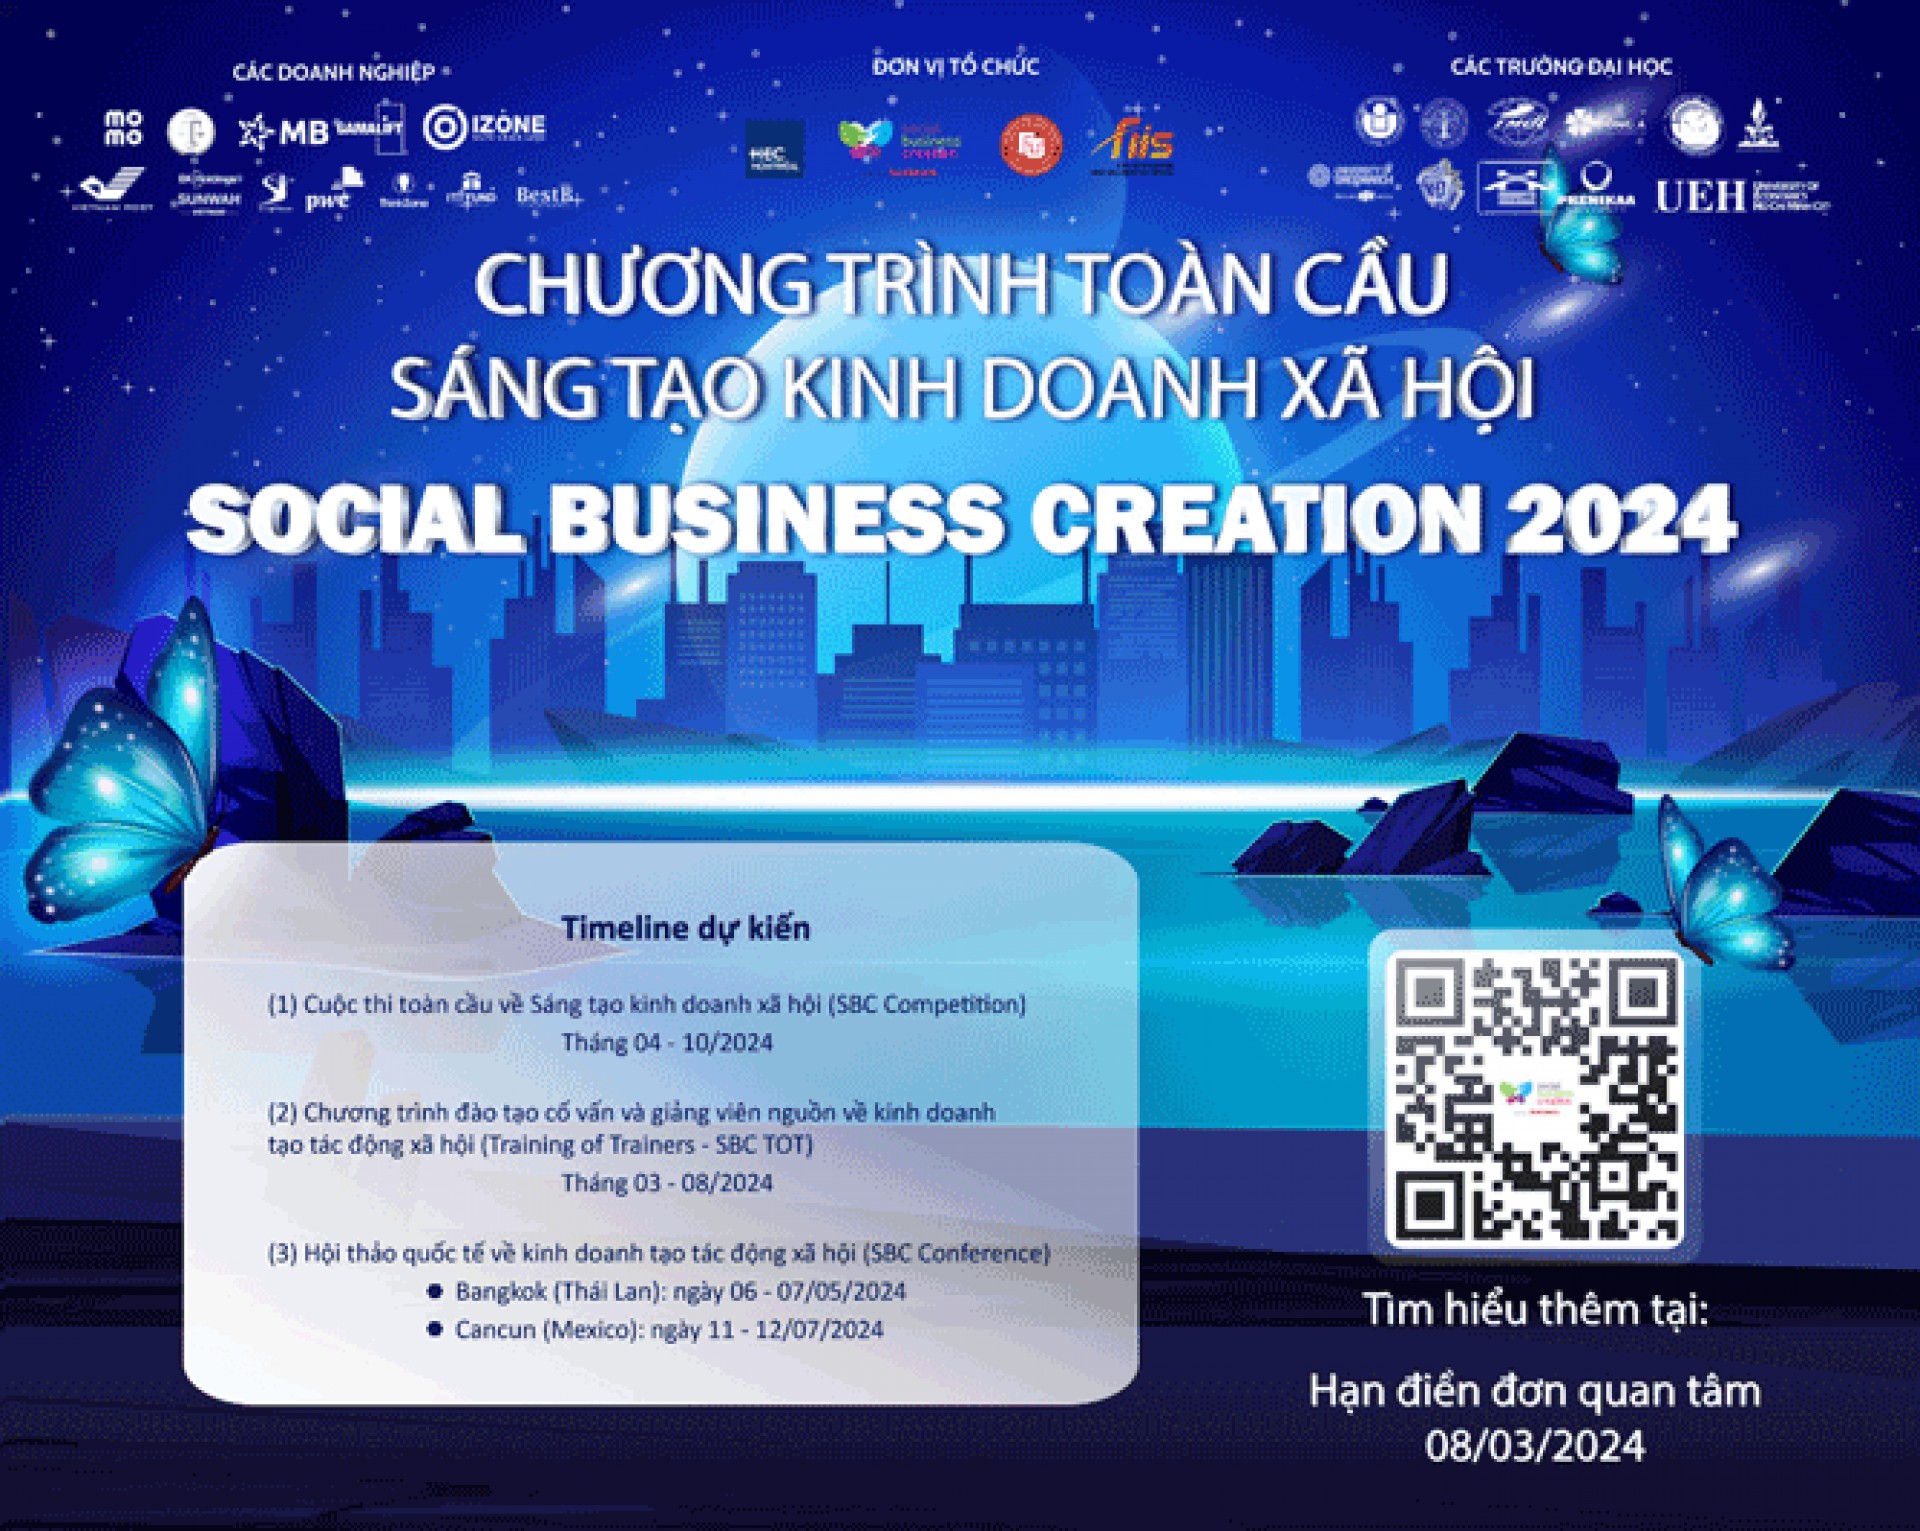 CHƯƠNG TRÌNH SÁNG TẠO KINH DOANH XÃ HỘI TOÀN CẦU – SOCIAL BUSINESS CREATION 2024